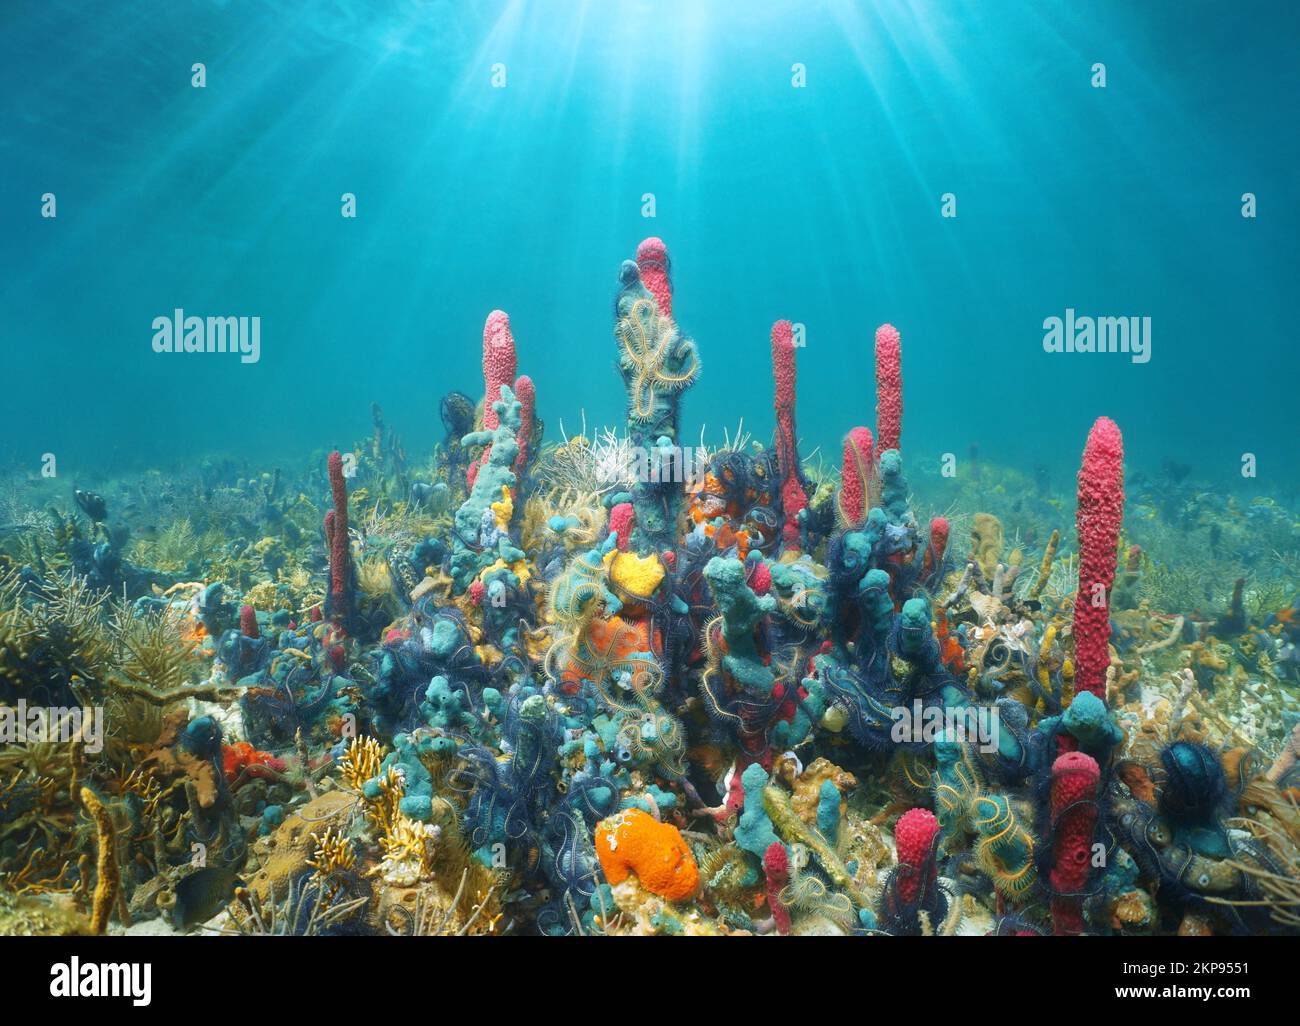 Soleil sous l'eau avec la vie marine colorée dans la mer des Caraïbes (récif avec des éponges de mer et des étoiles fragiles), Amérique centrale Banque D'Images